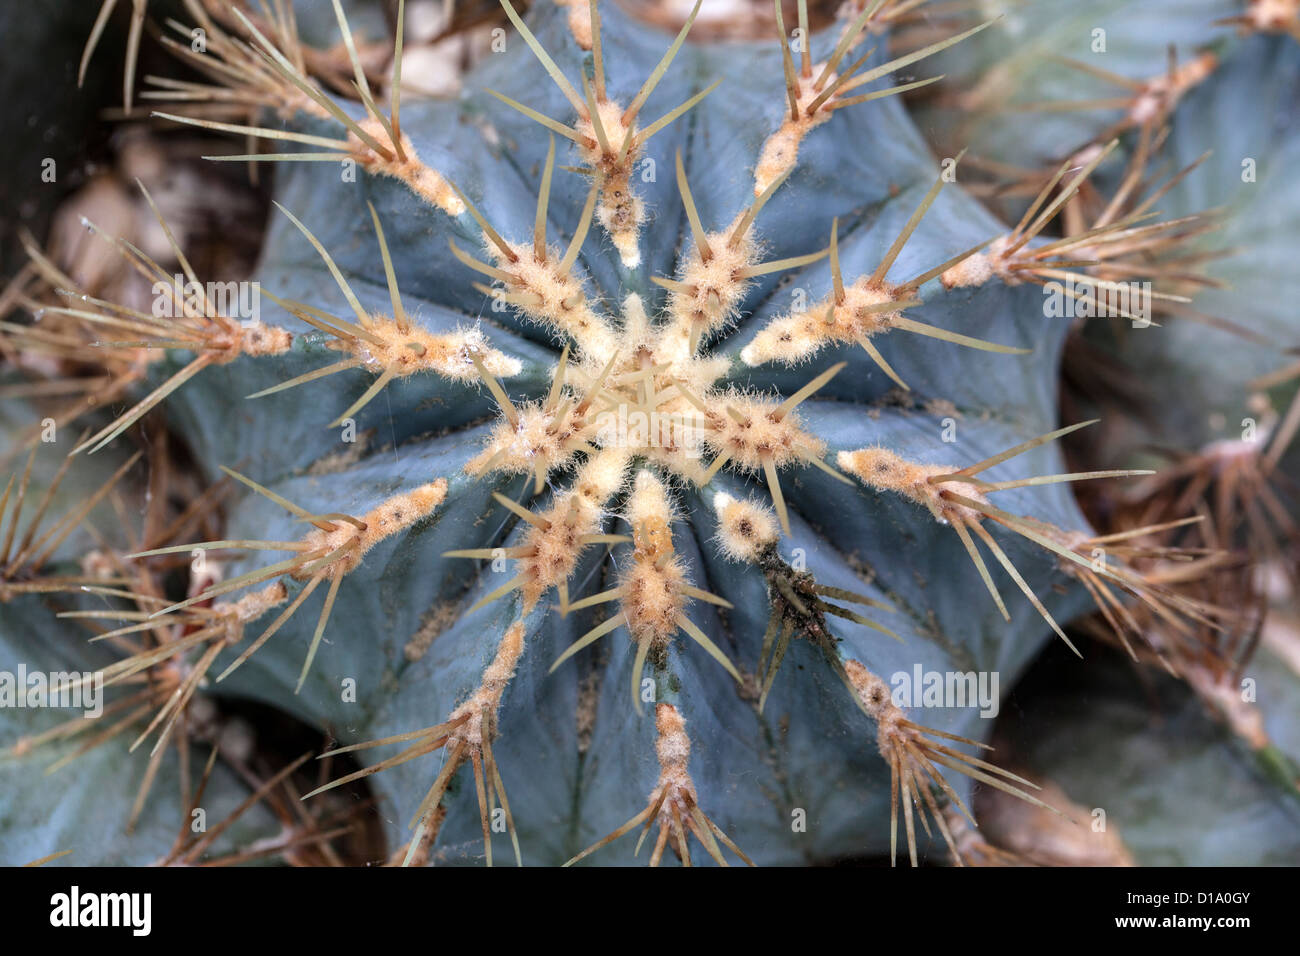 Glaucous barrel cactus, Blågrön djävulstunga (Ferocactus glaucescens) Stock Photo